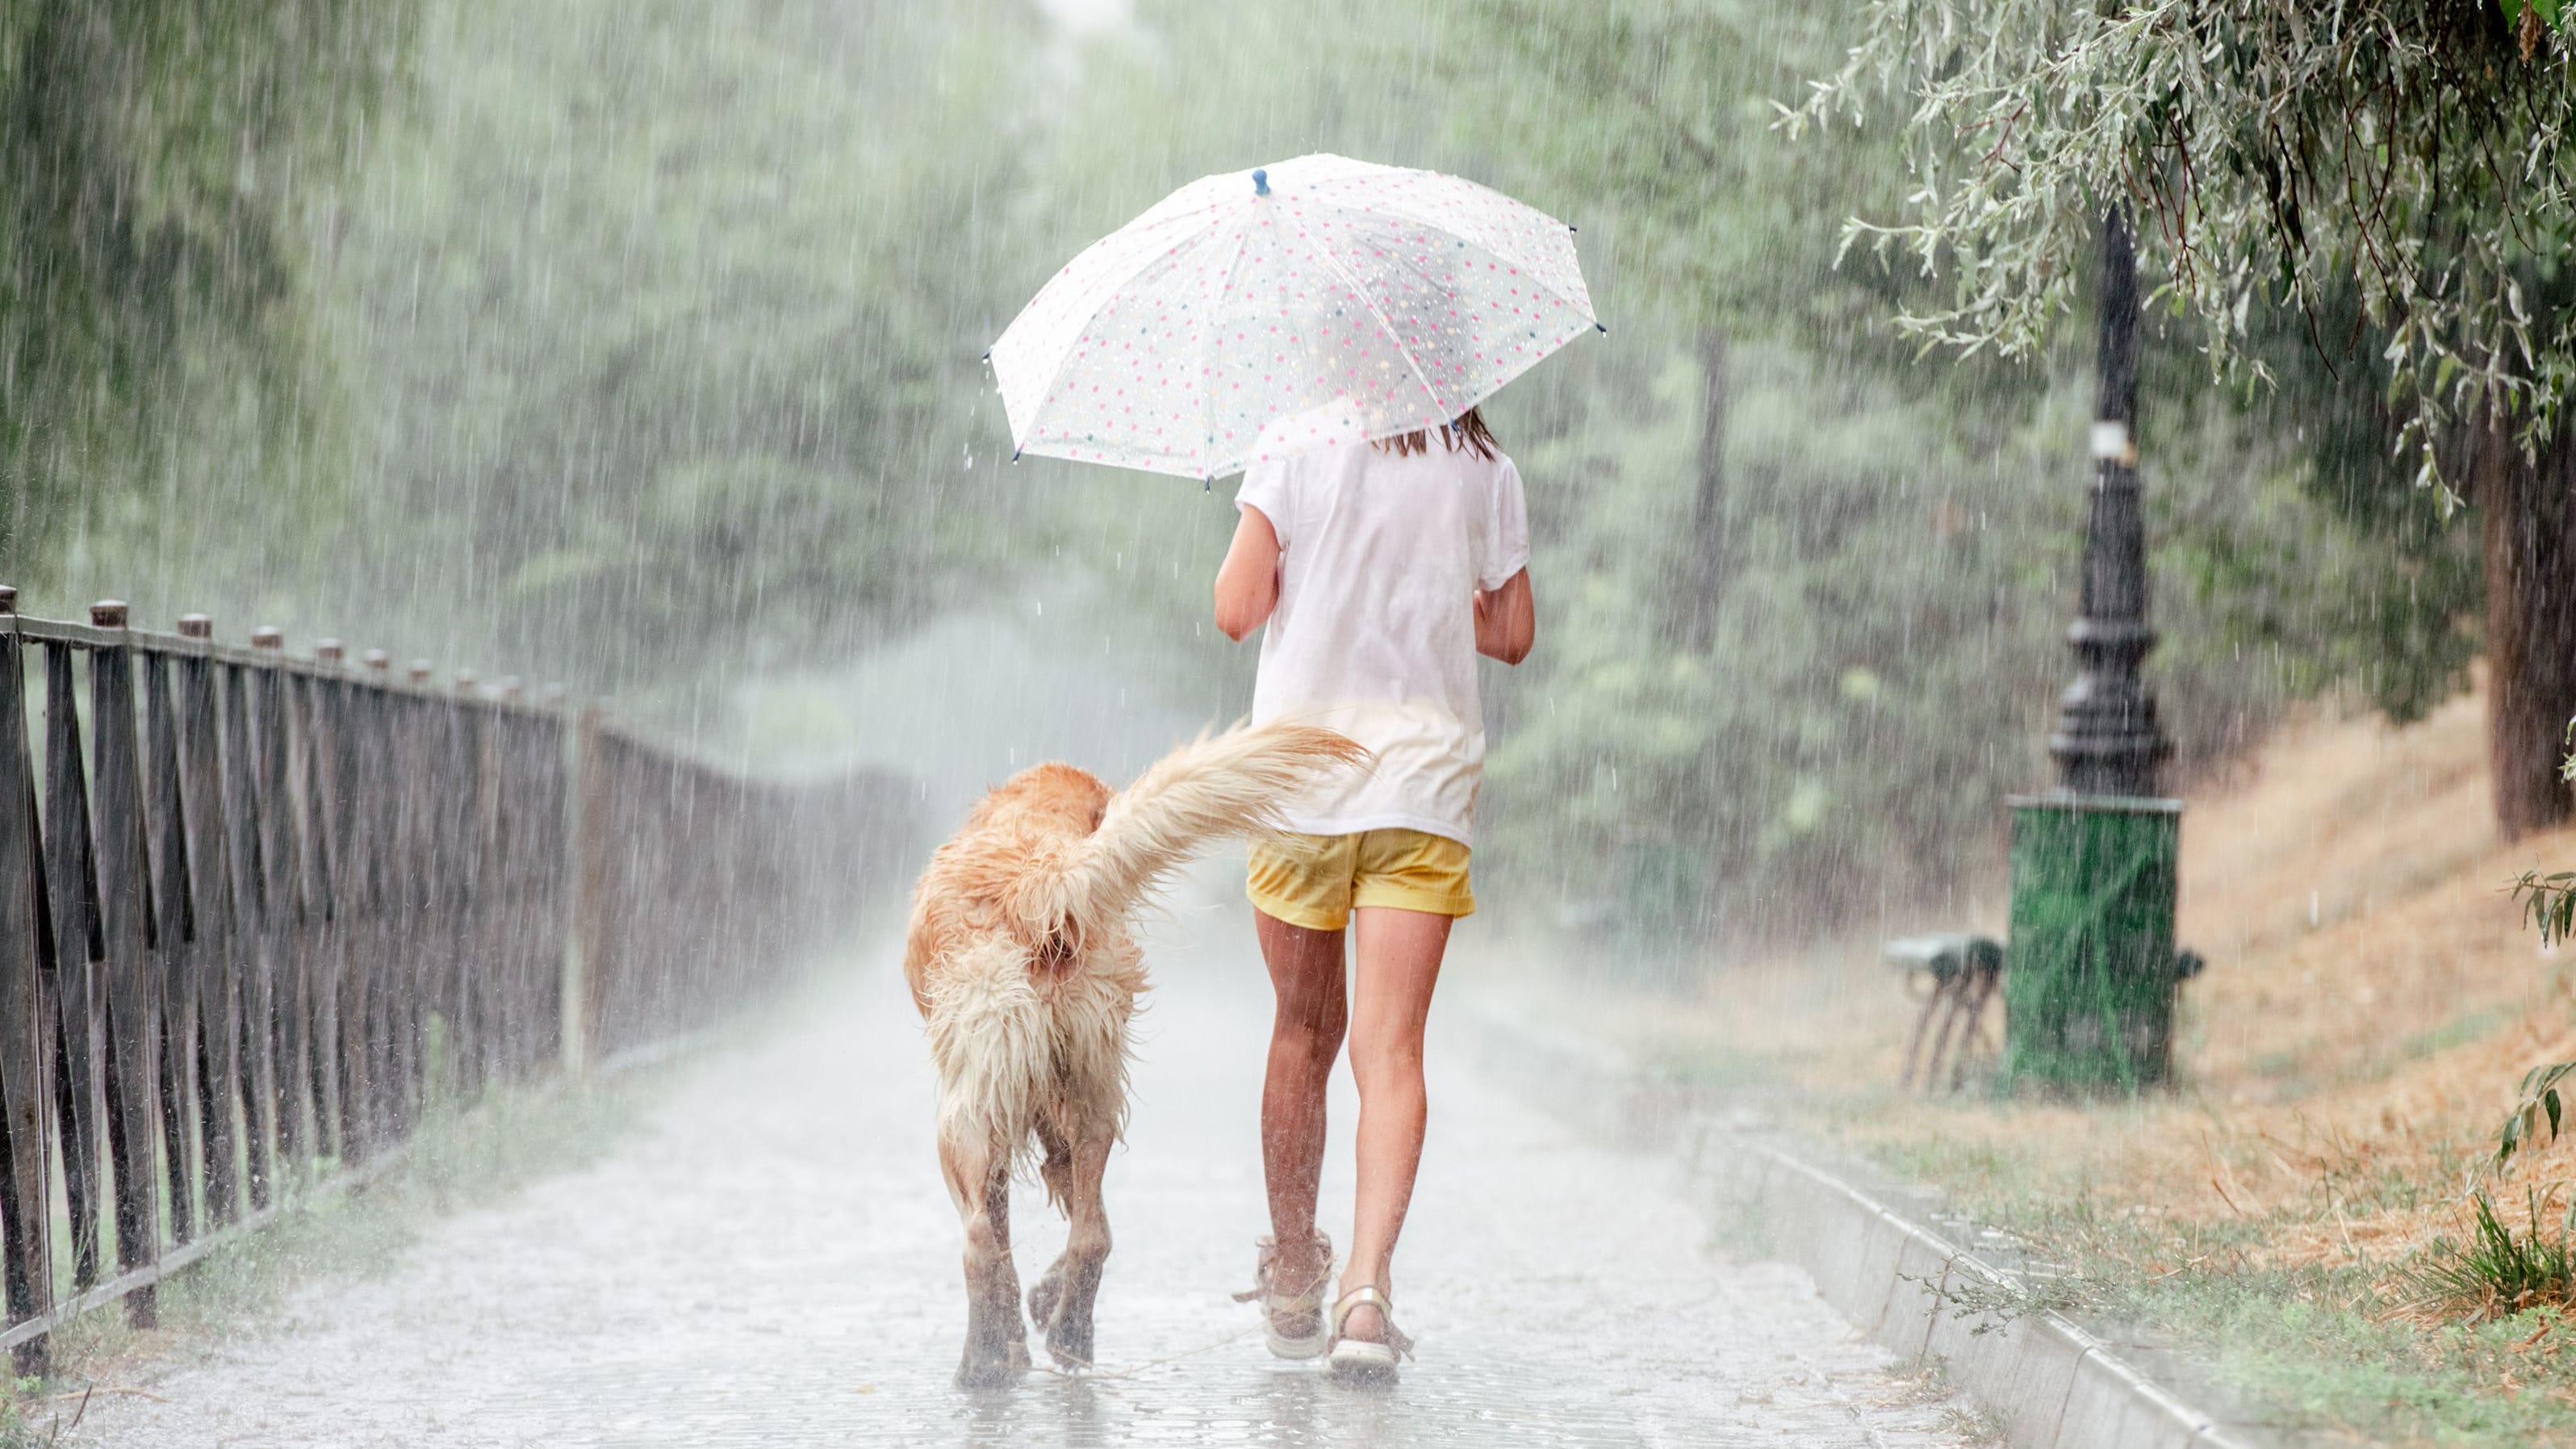 Verhalten bei Gewitter: Regenschirme können zur Gefahr werden.